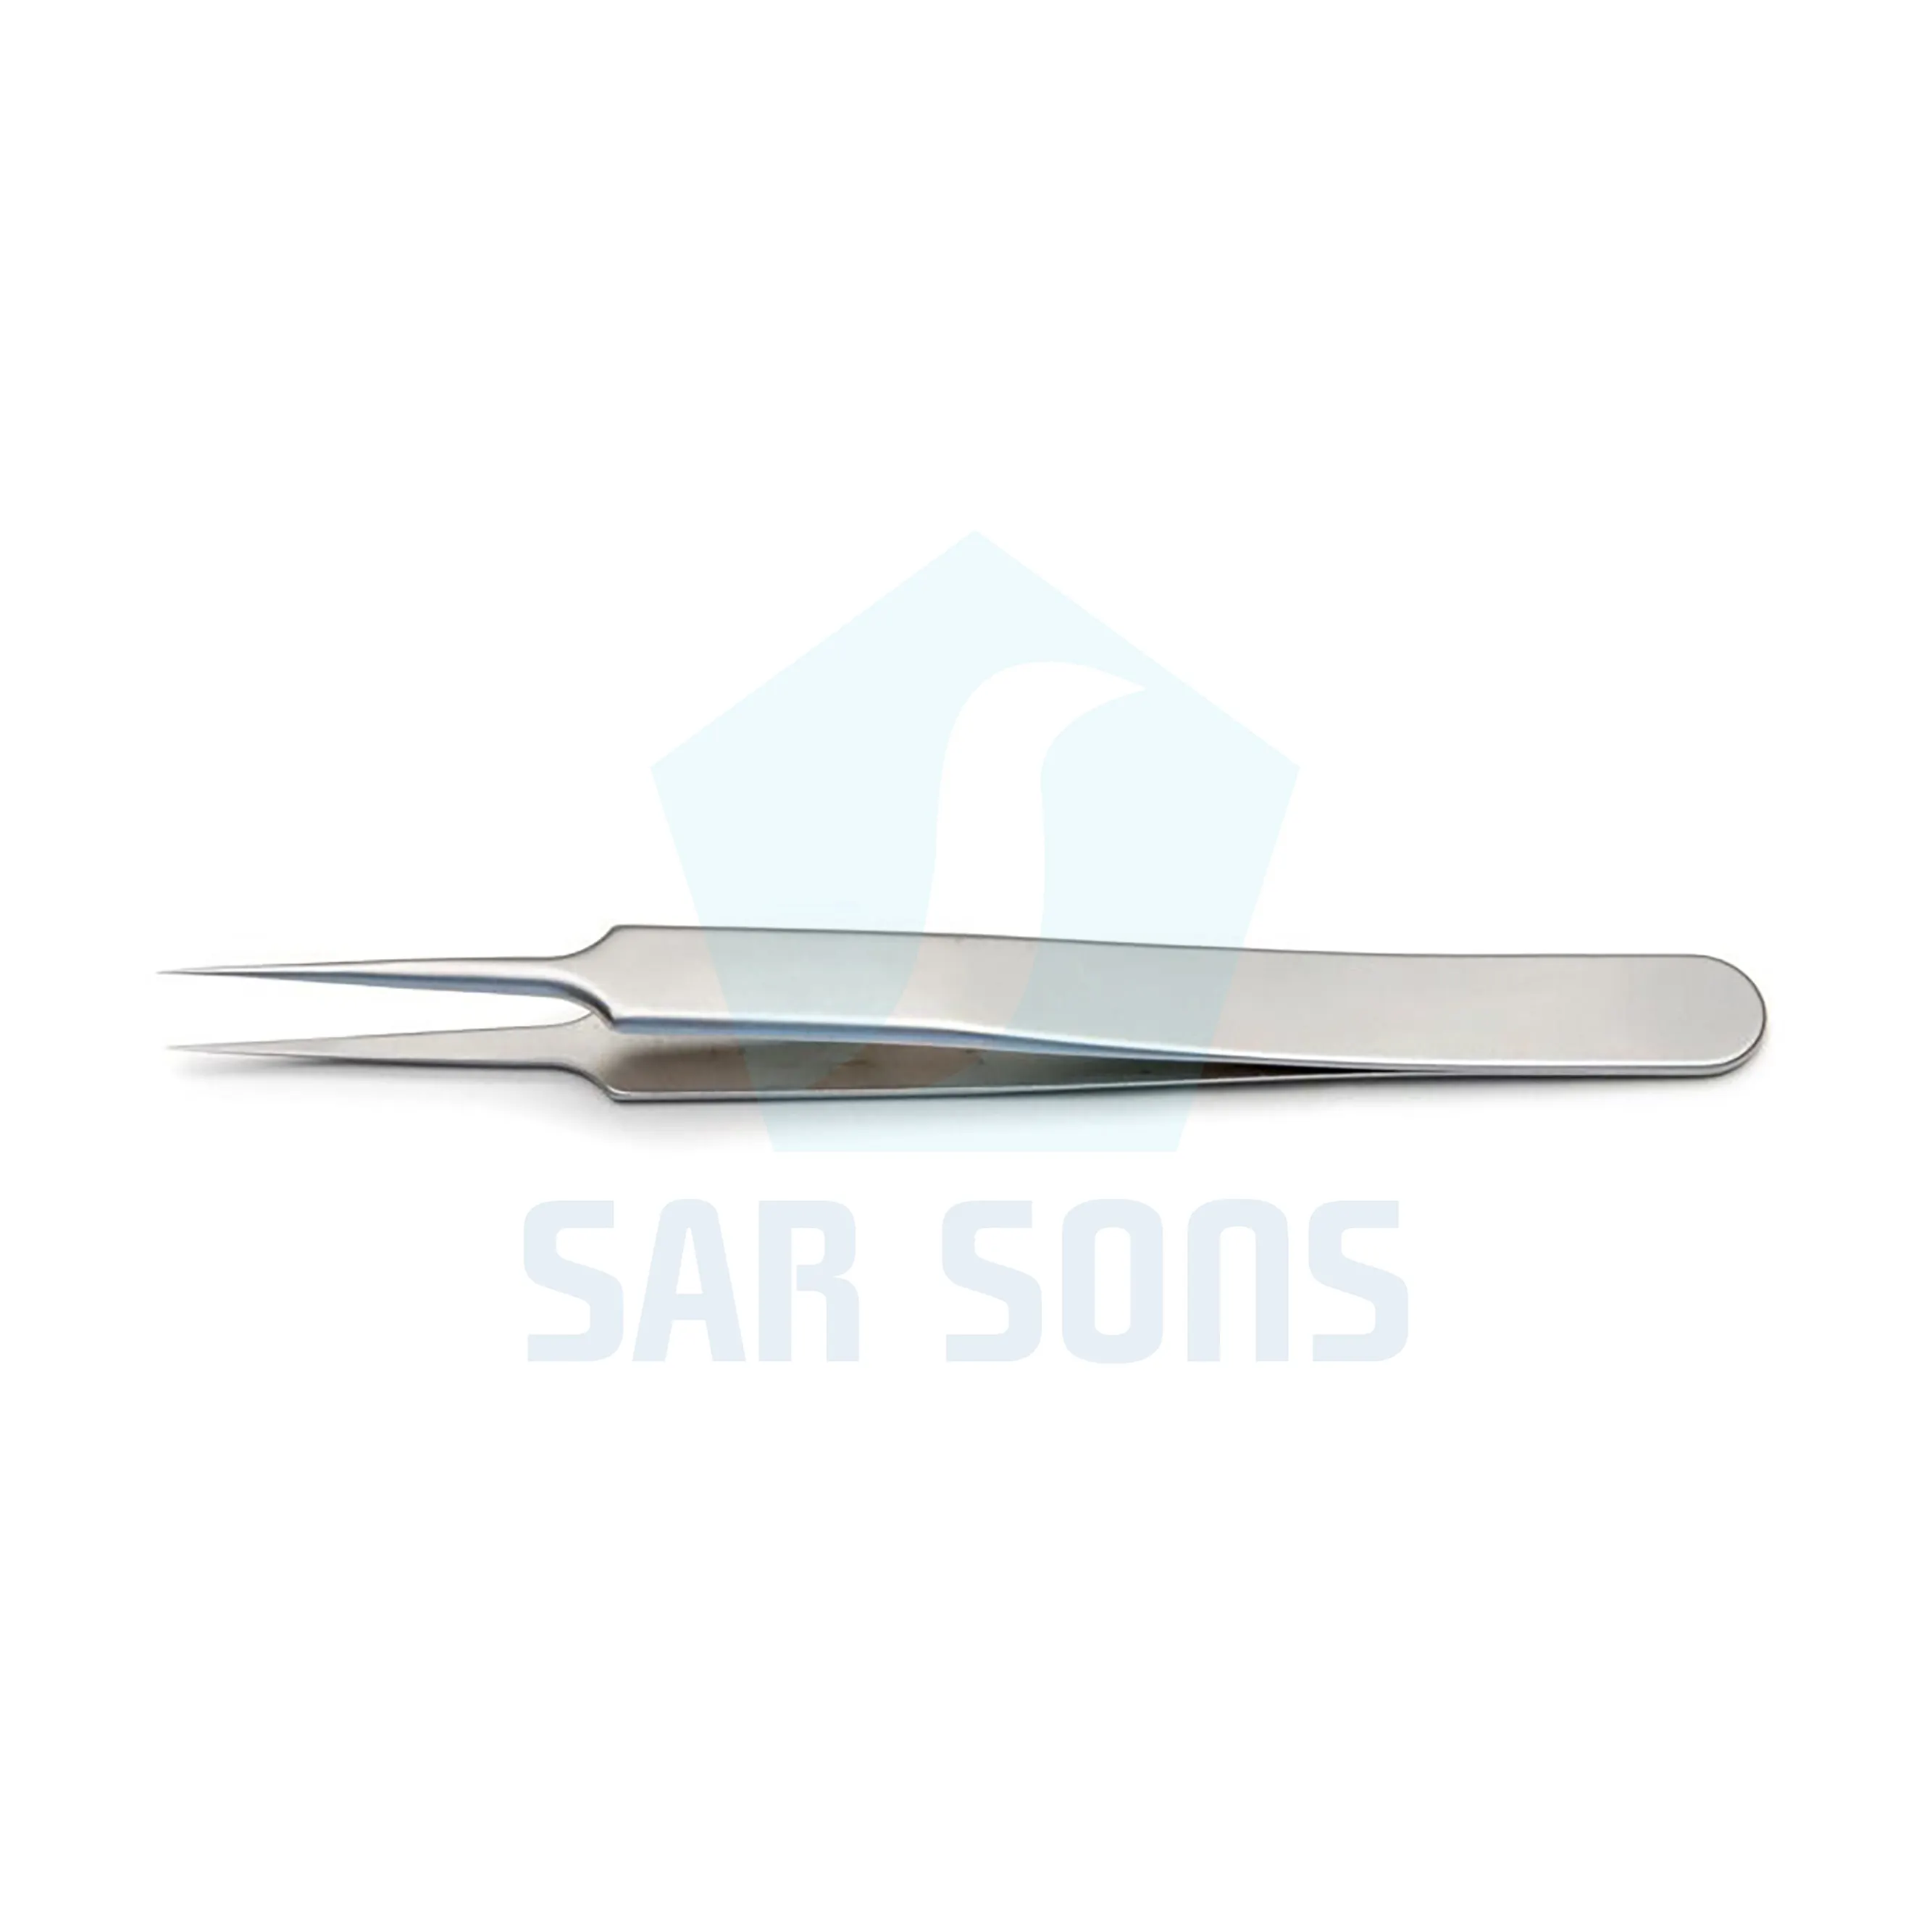 Pince à épiler suisse à microdissection 110 mm de long 0.1x0.06mm pointes droites fines Instruments chirurgicaux Sar Sons Sugrical